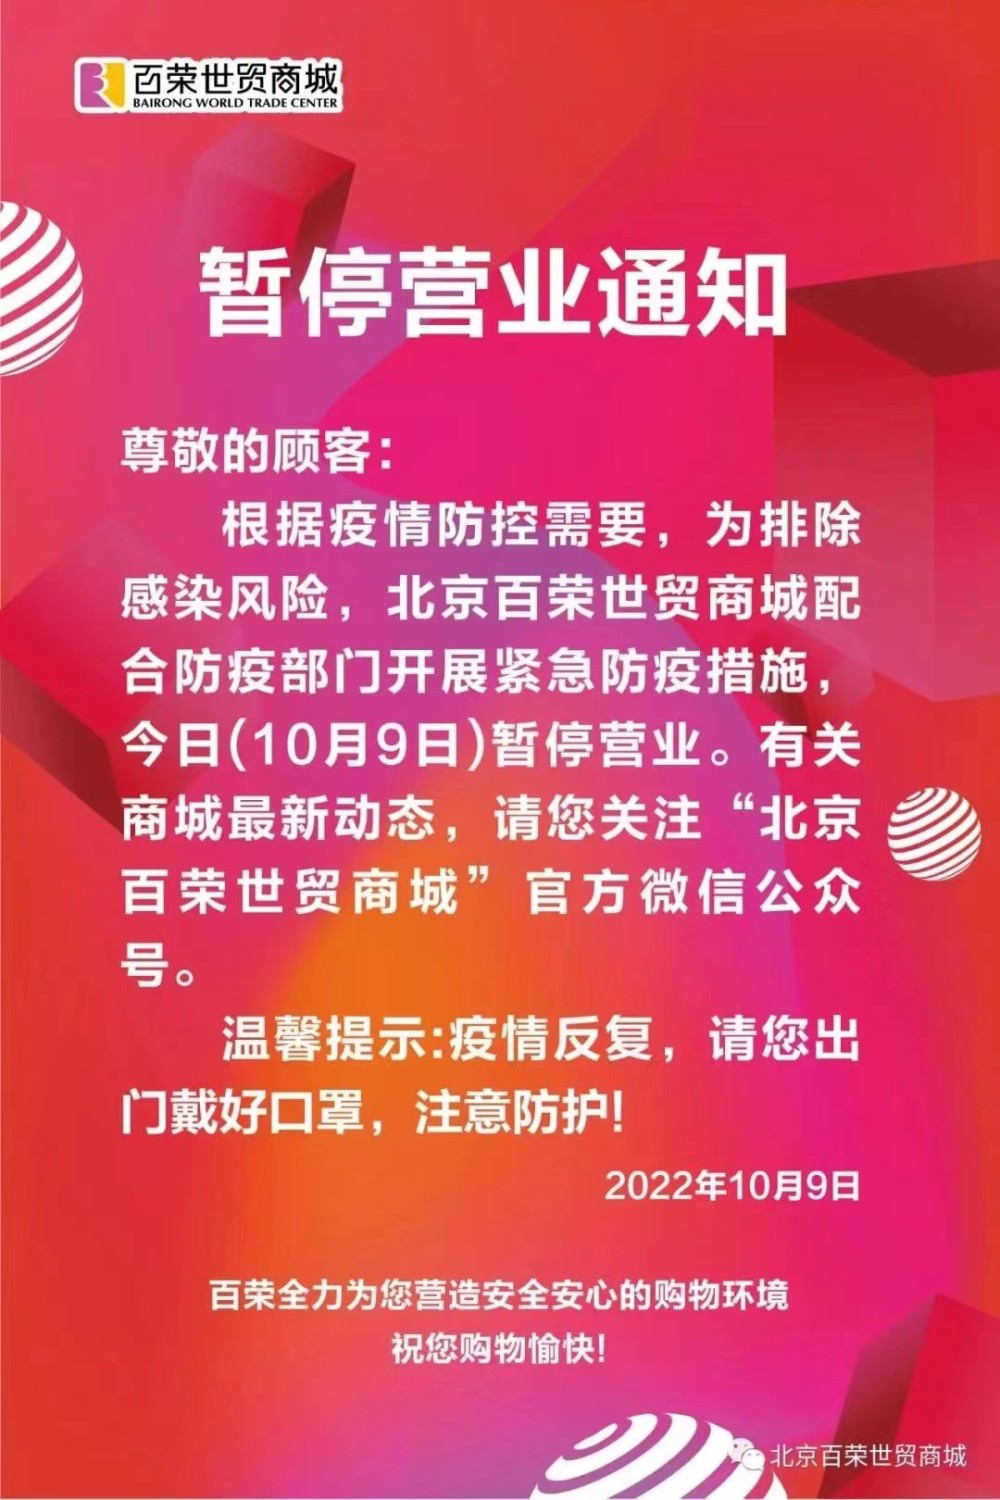 疫情防控需要，北京百荣世贸商城10月9日暂停营业